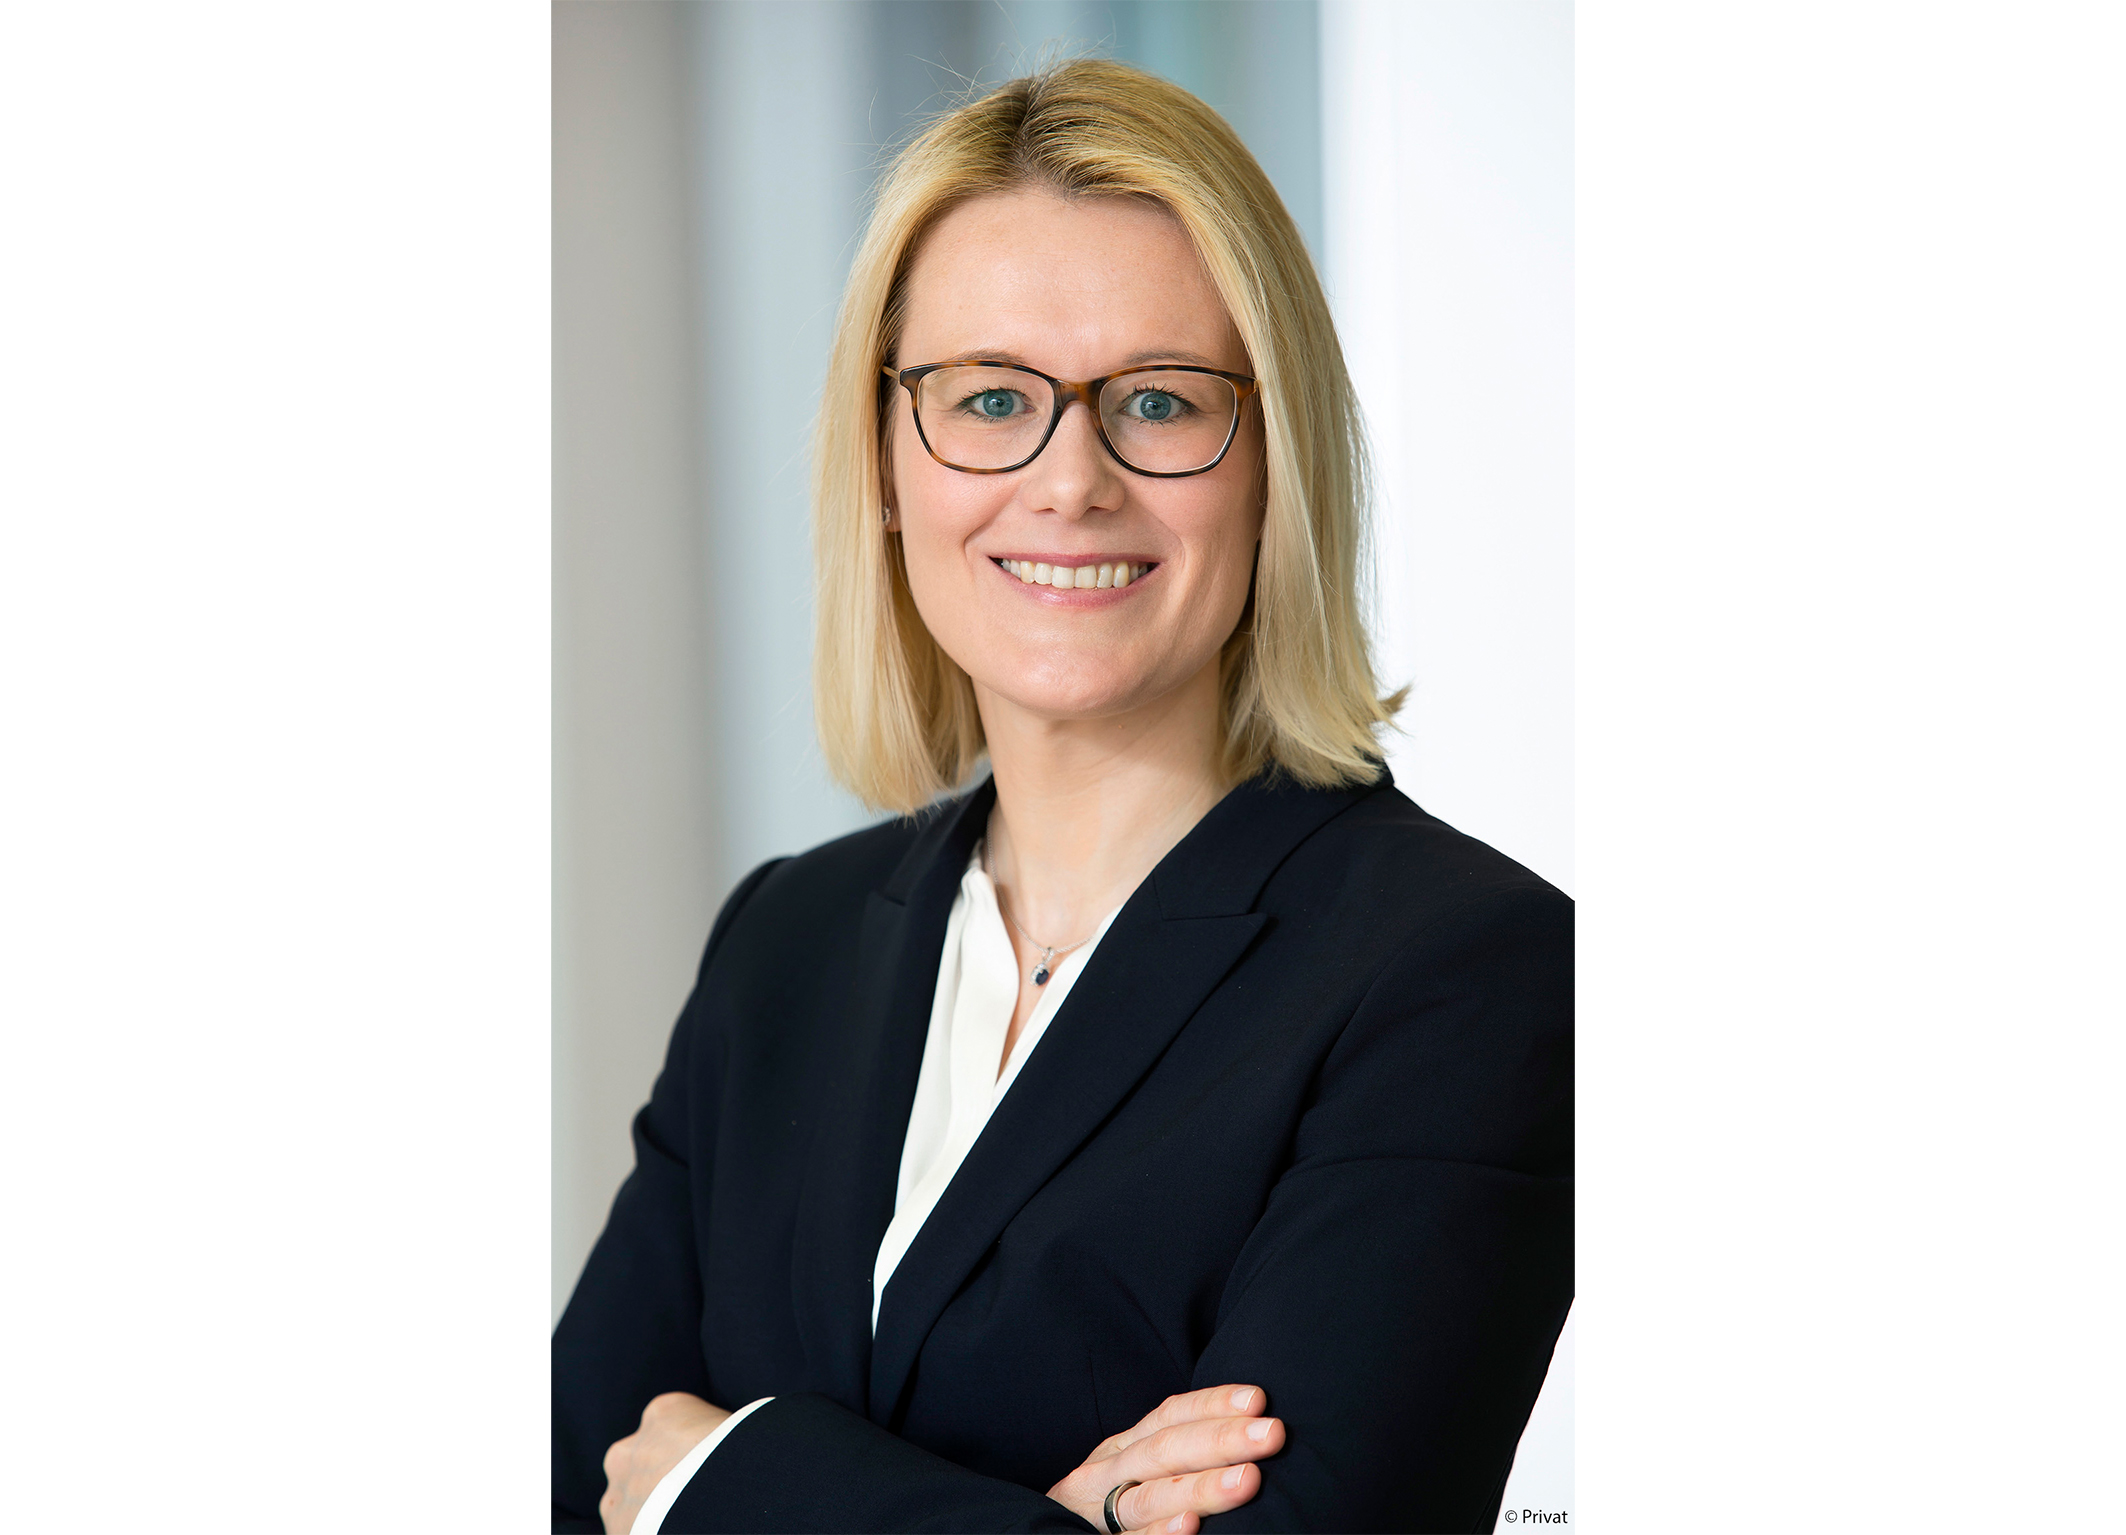 Industrieverband Klebstoffe e.V.: Dr. Kathrin Hein zur neuen Vorstandsvorsitzenden gewählt